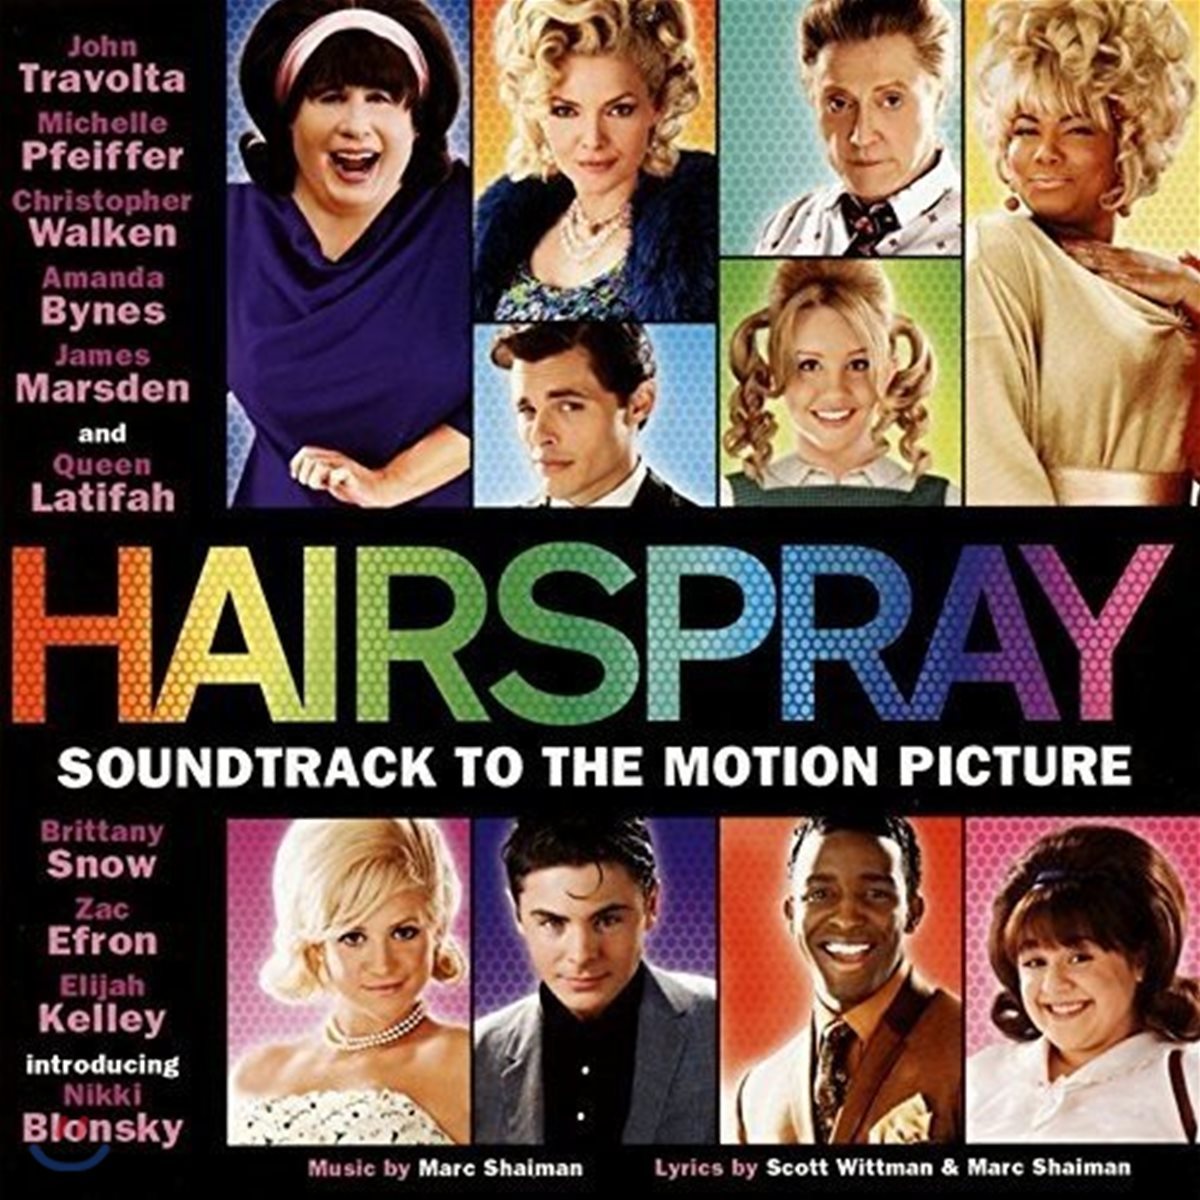 헤어스프레이 뮤지컬 영화음악 (Hairspray OST - Music by Marc Shaiman 마크 샤이먼)